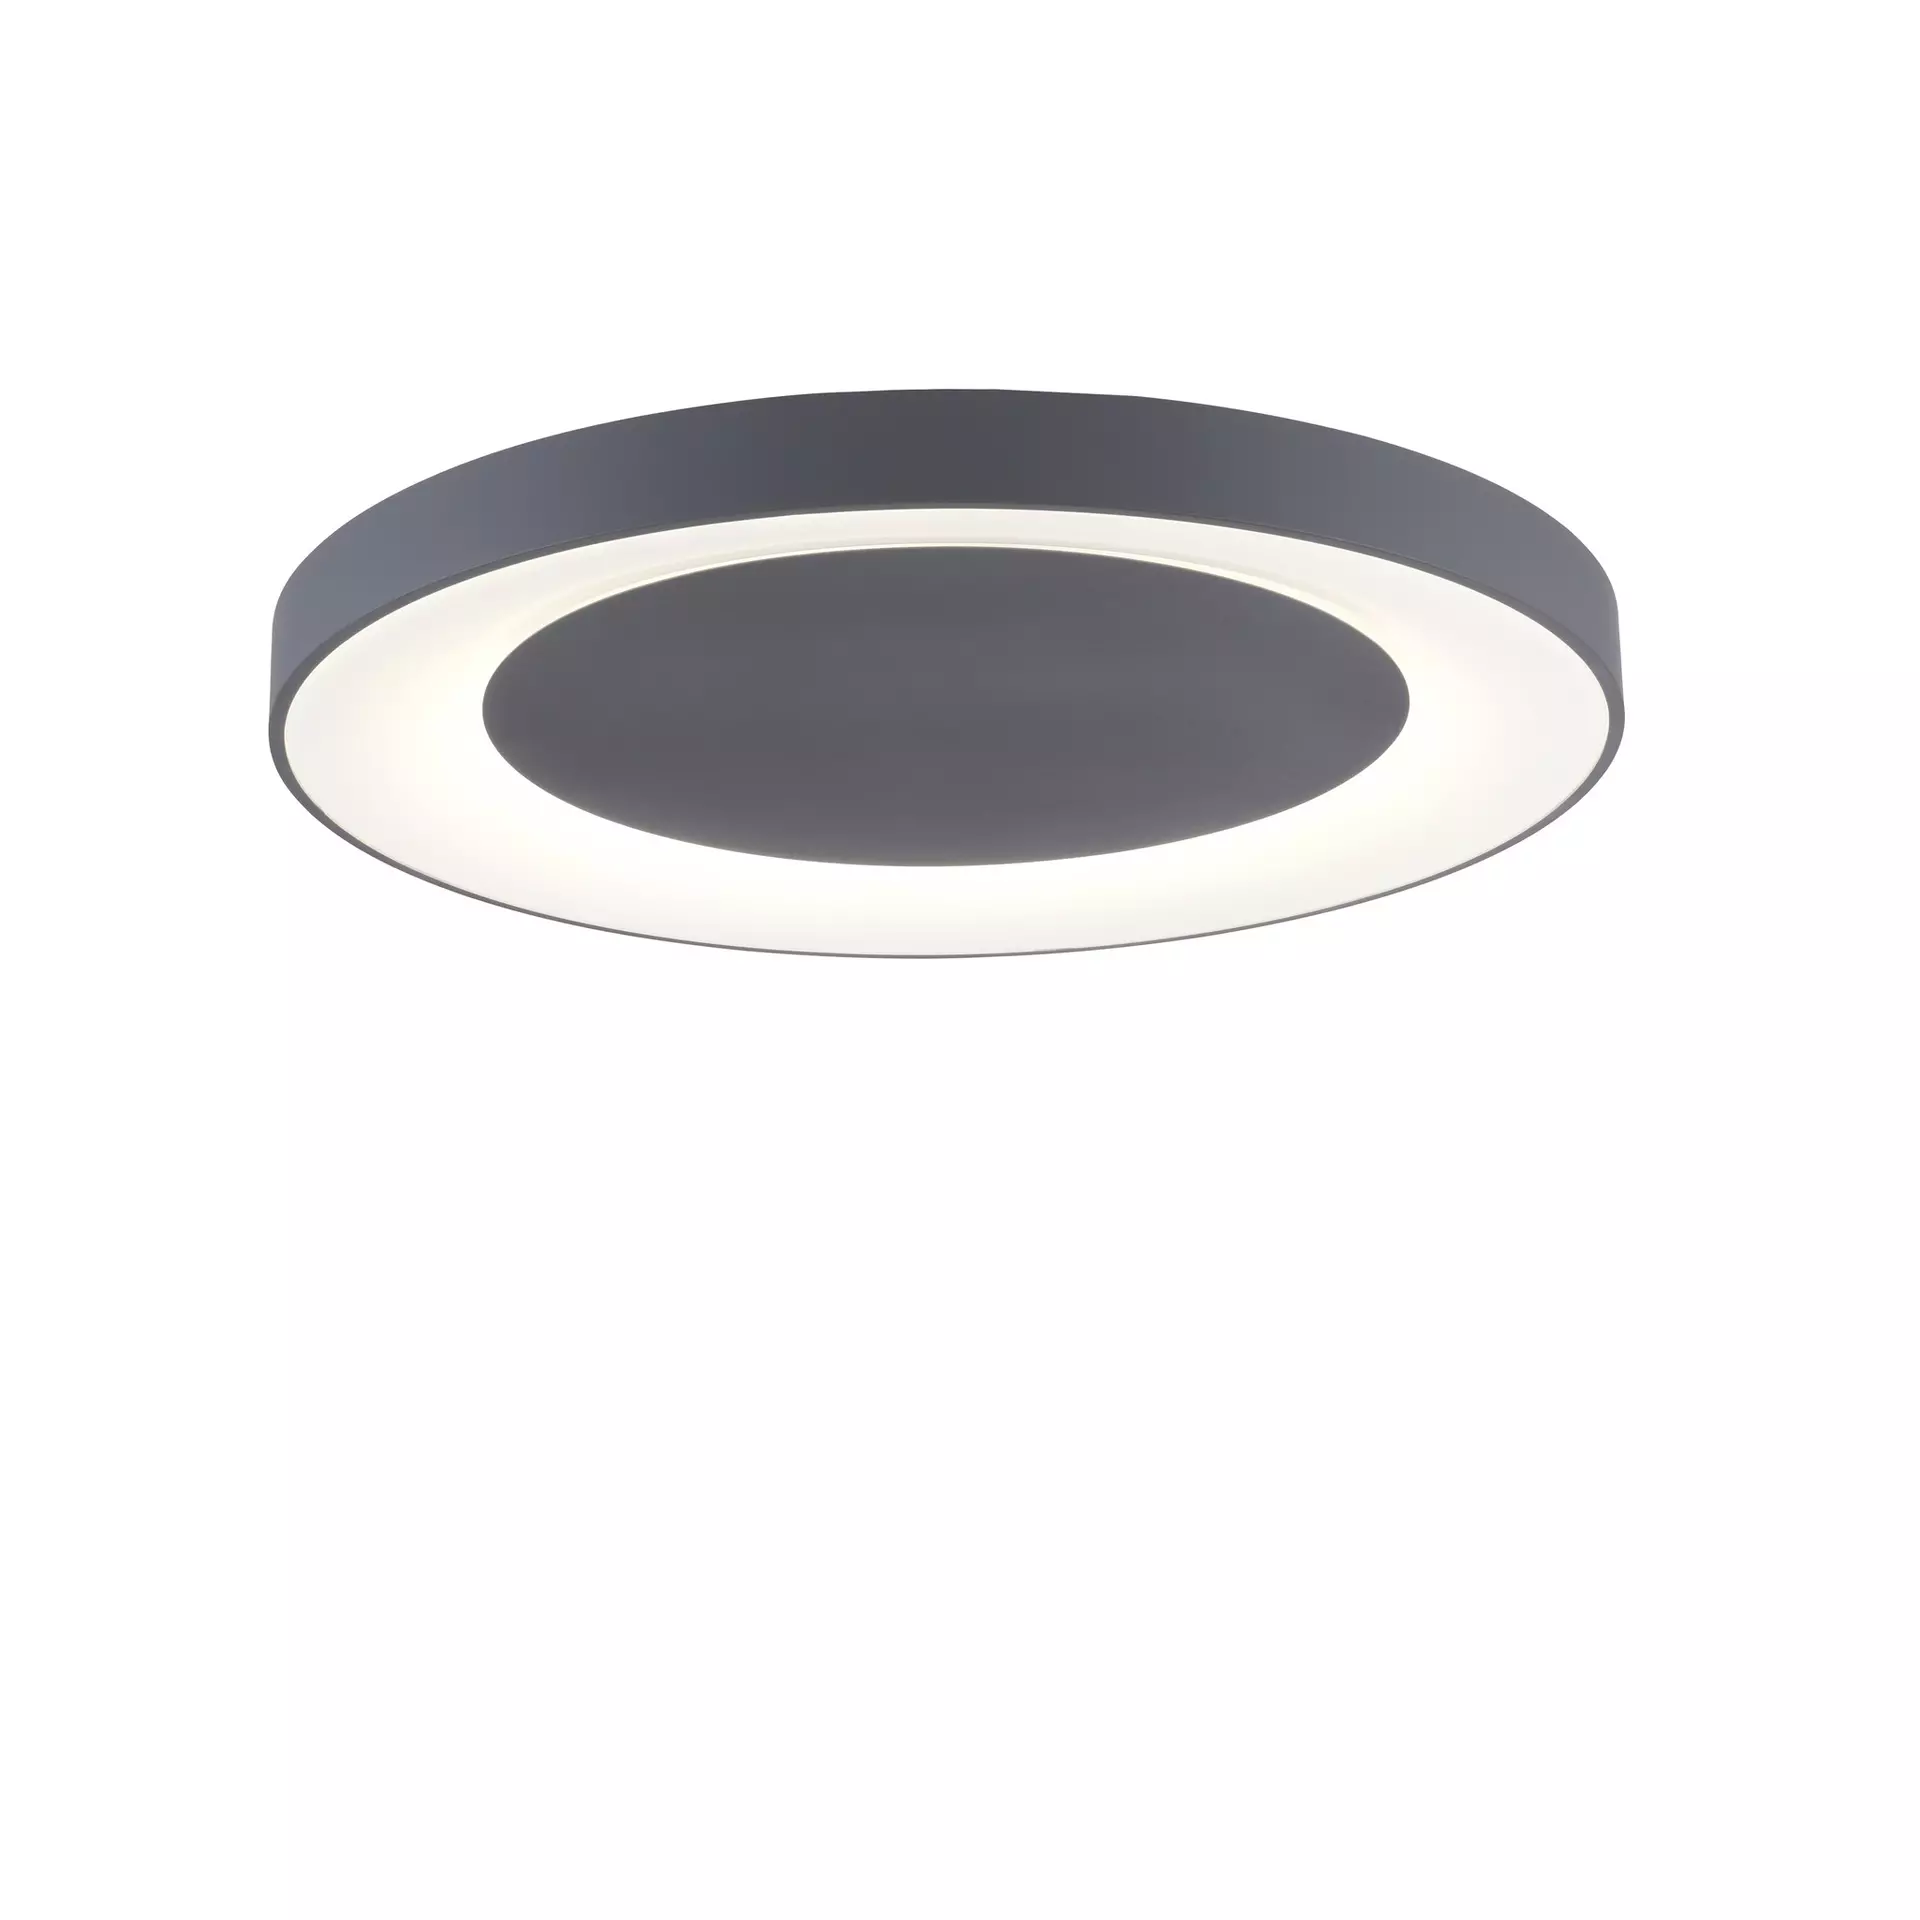 Deckenleuchte LED Fernbedienung grau | Möbel Inhofer